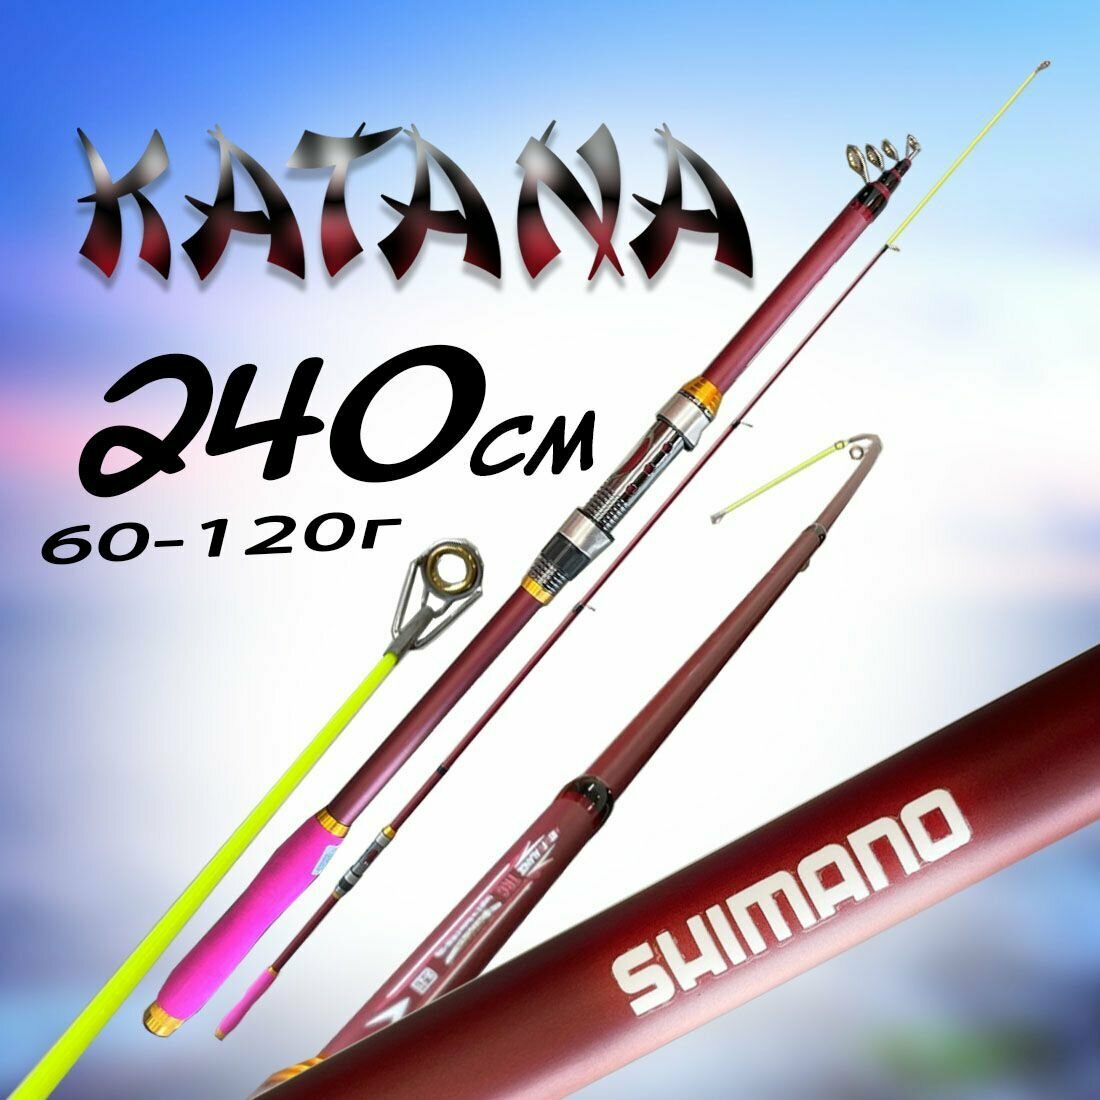 Удилище для рыбалки Шимано Катана 240см 60-120г Средне-быстрый строй